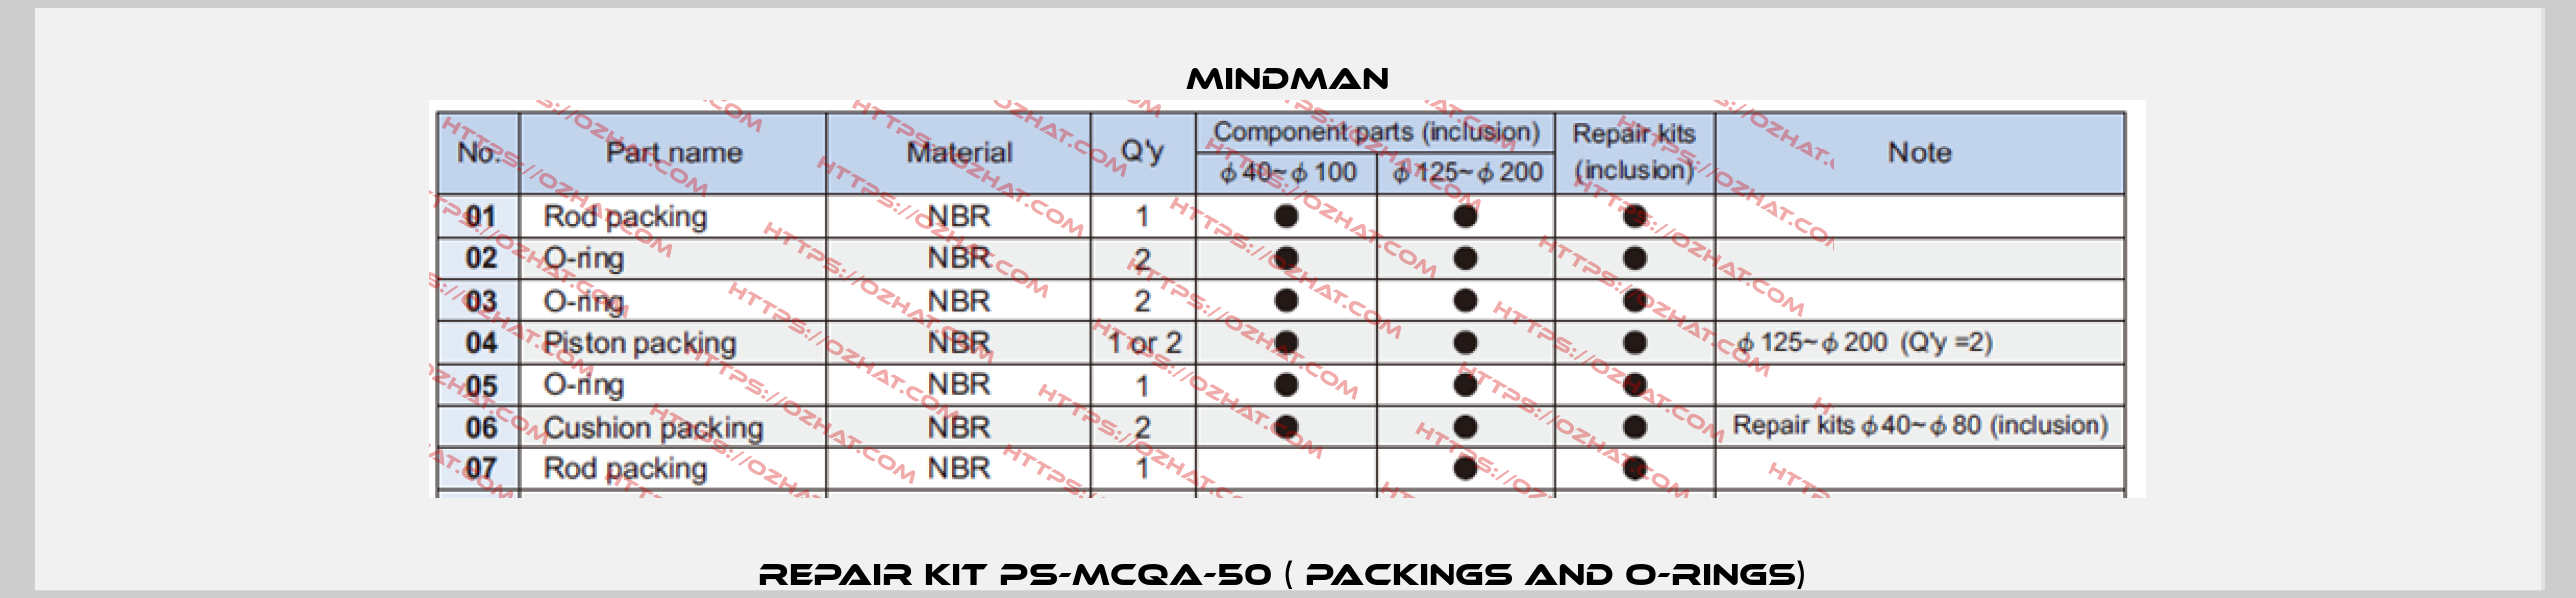 Repair kit PS-MCQA-50 ( packings and O-rings)  Mindman